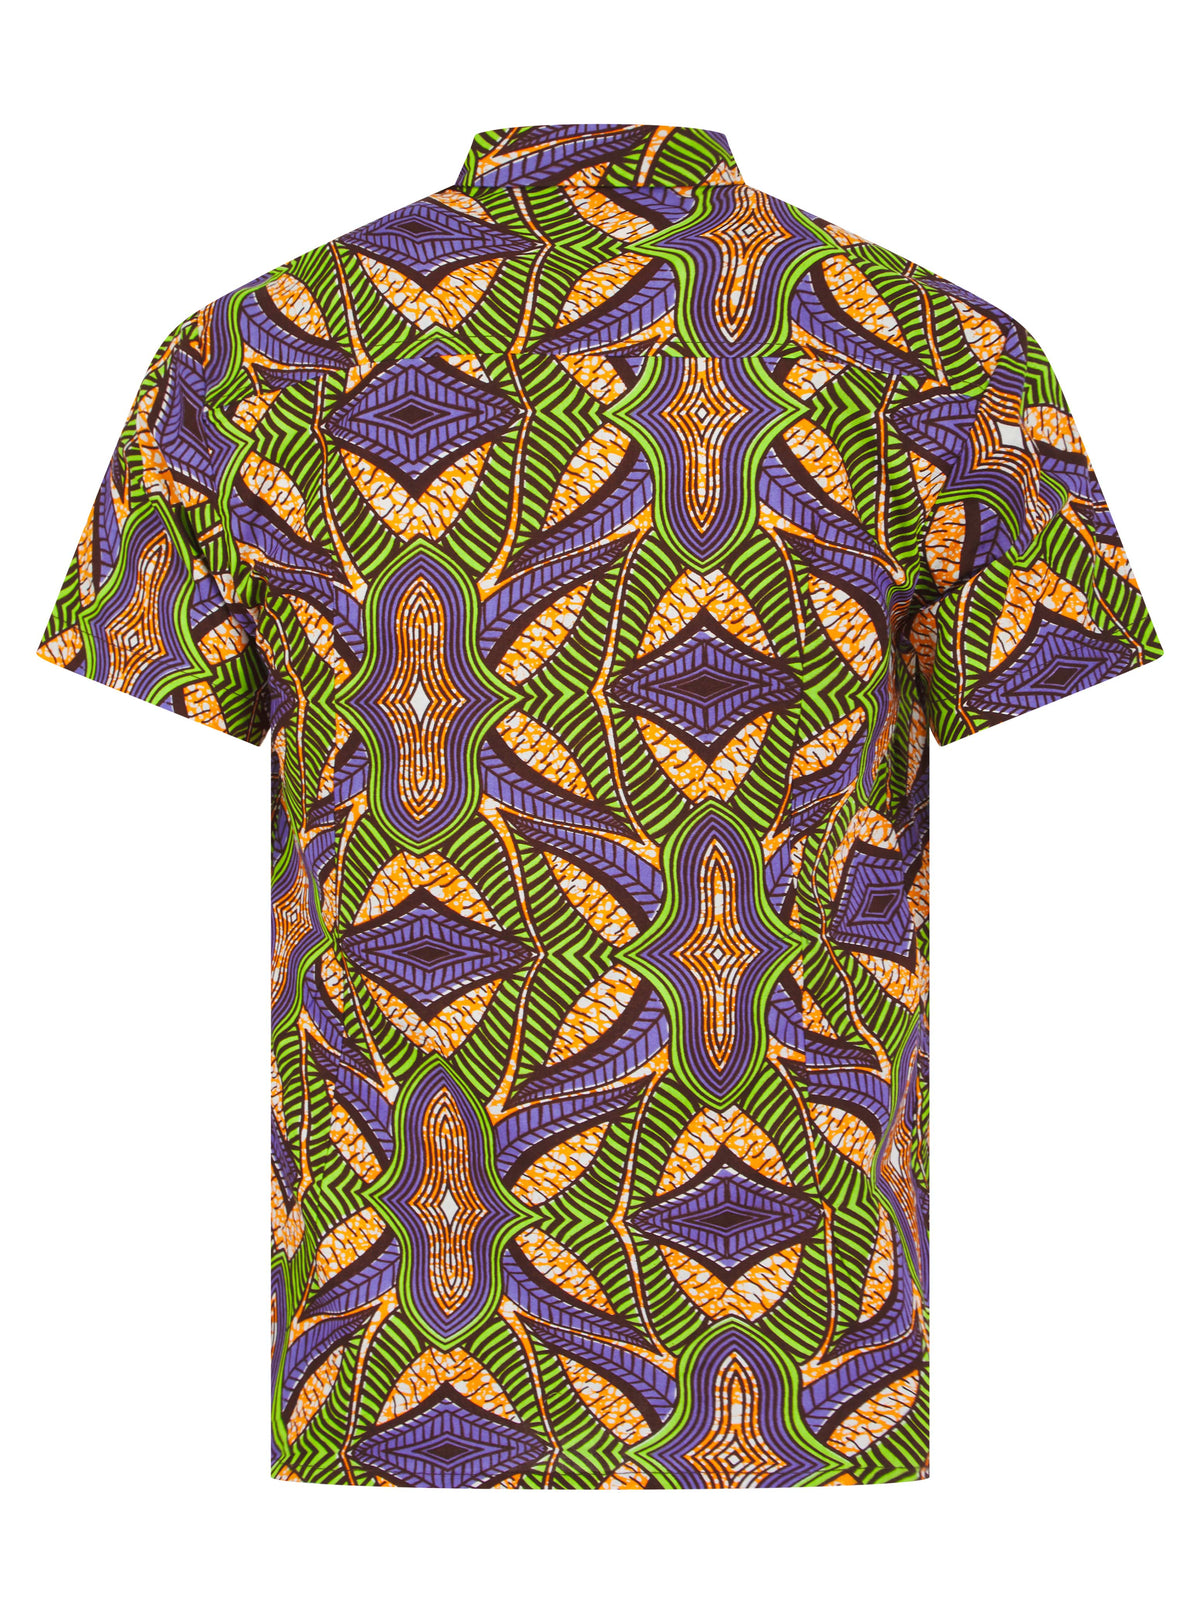 Men's Short Sleeve African print shirt